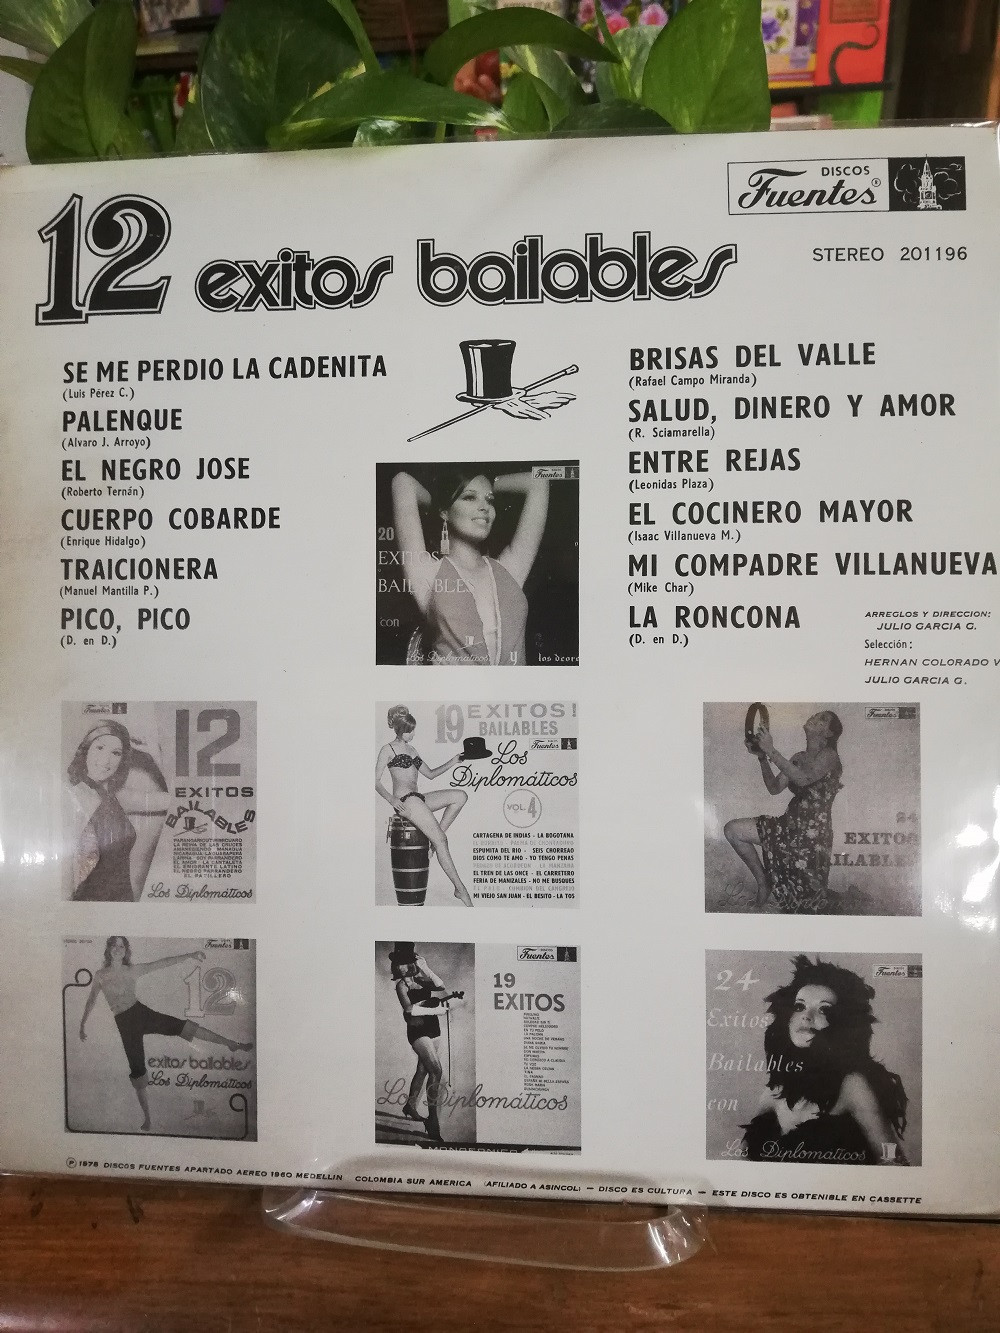 Imagen LP LOS DIPLOMÁTICOS - 12 EXITOS BAILABLES VOL. 3 2